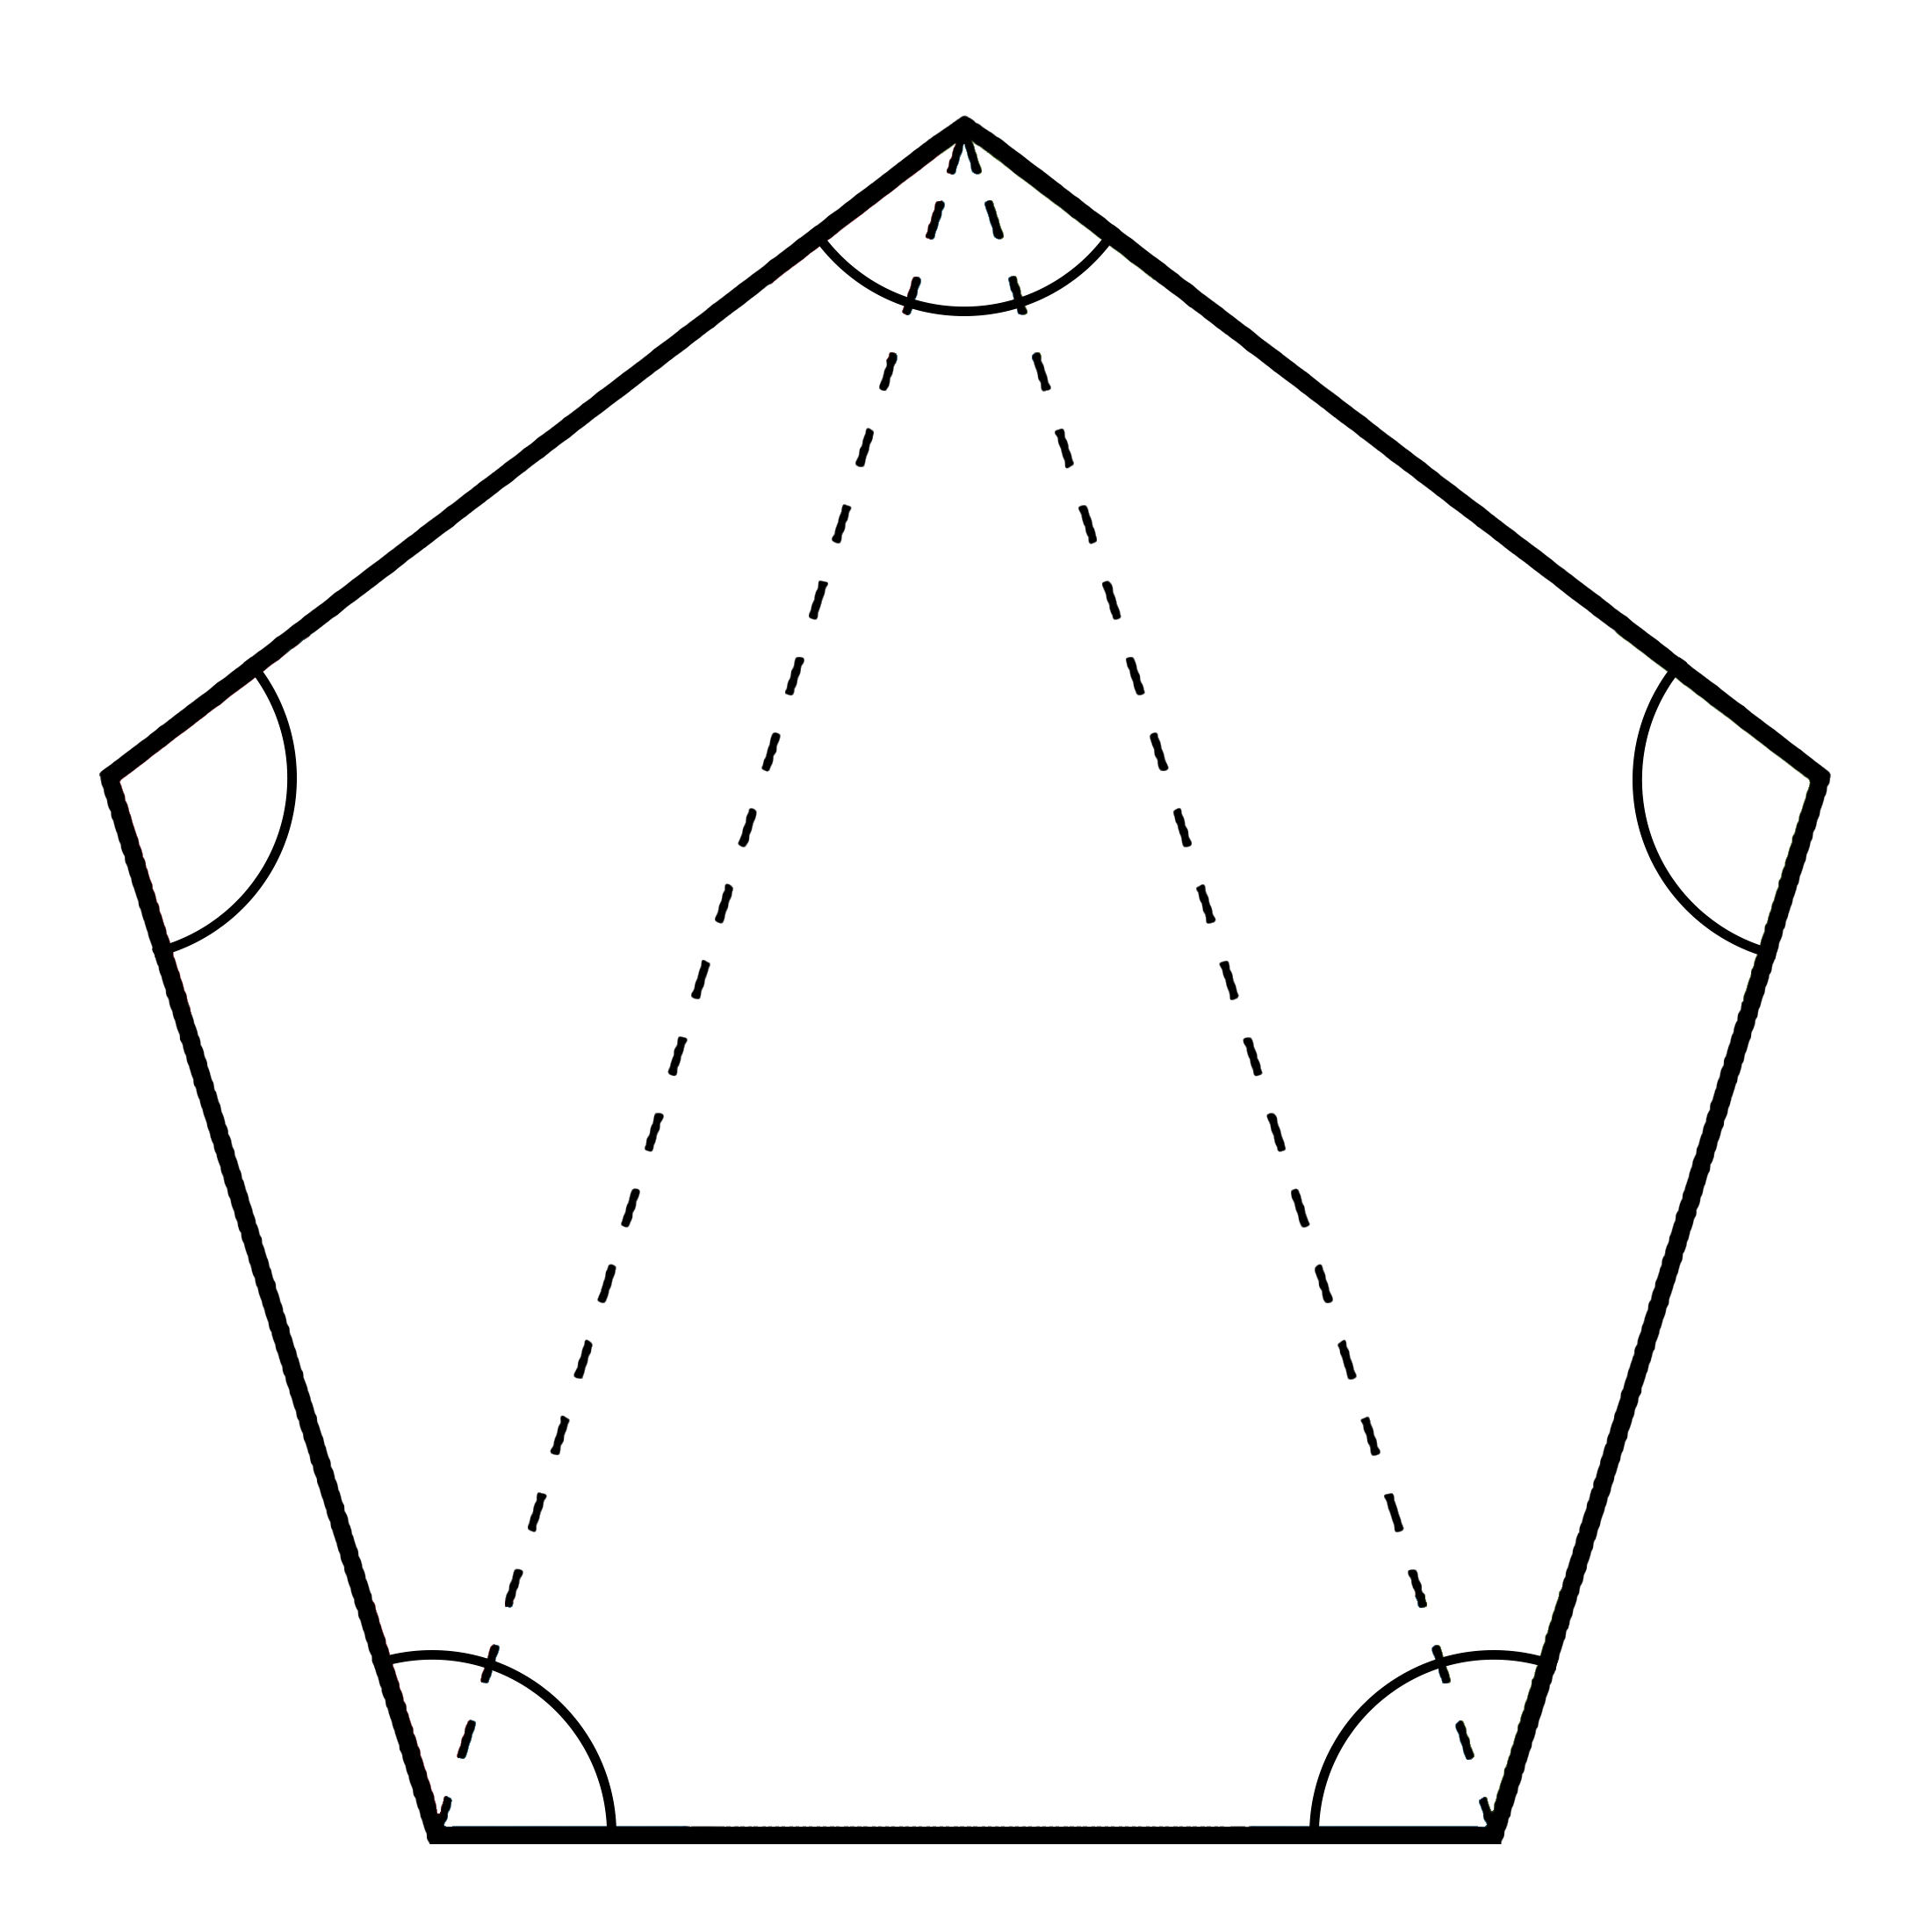 Figure geometriche - Calcolare somma angoli pentagono